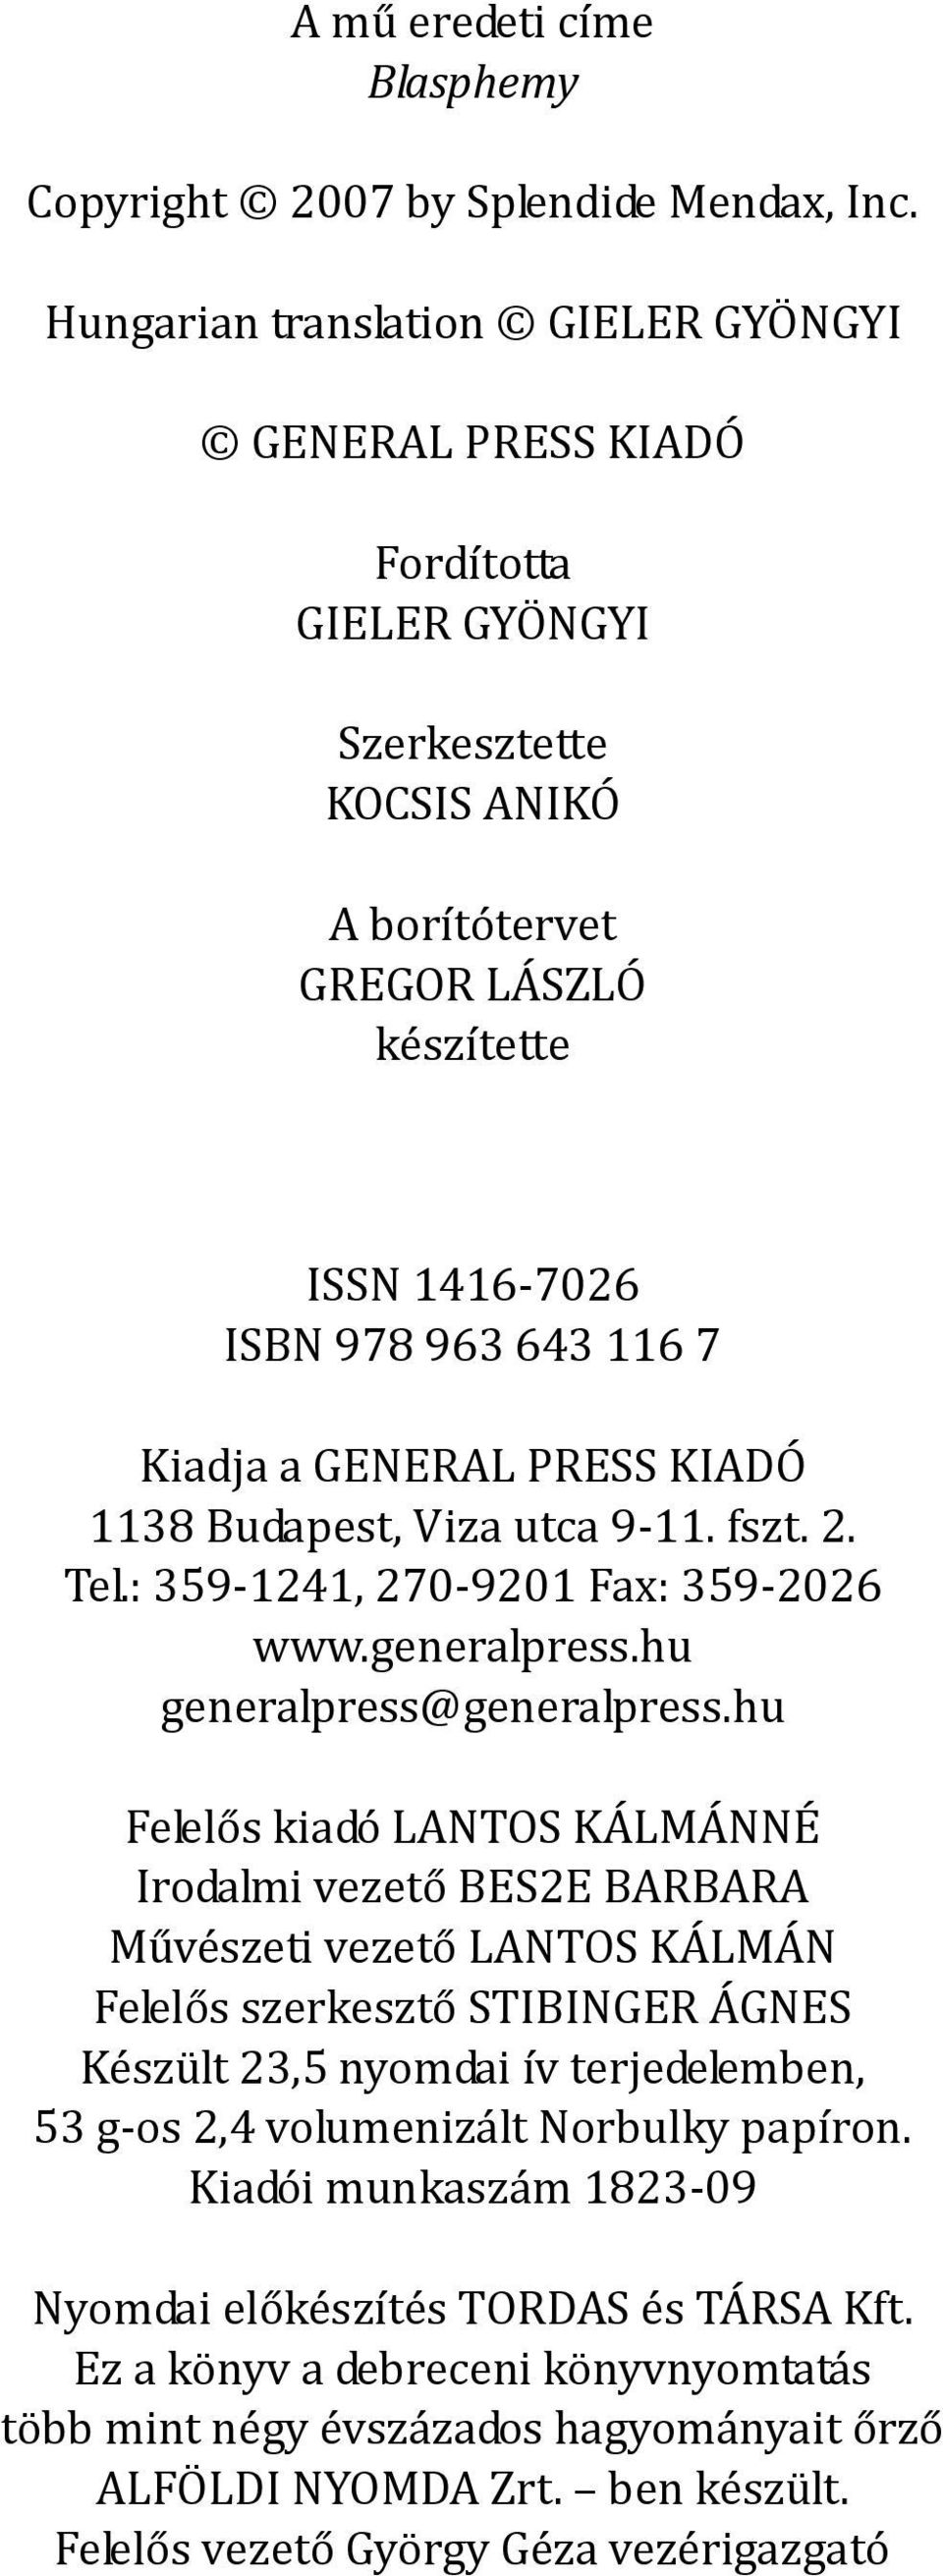 GENERAL PRESS KIADÓ 1138 Budapest, Viza utca 9-11. fszt. 2. Tel.: 359-1241, 270-9201 Fax: 359-2026 www.generalpress.hu generalpress@generalpress.